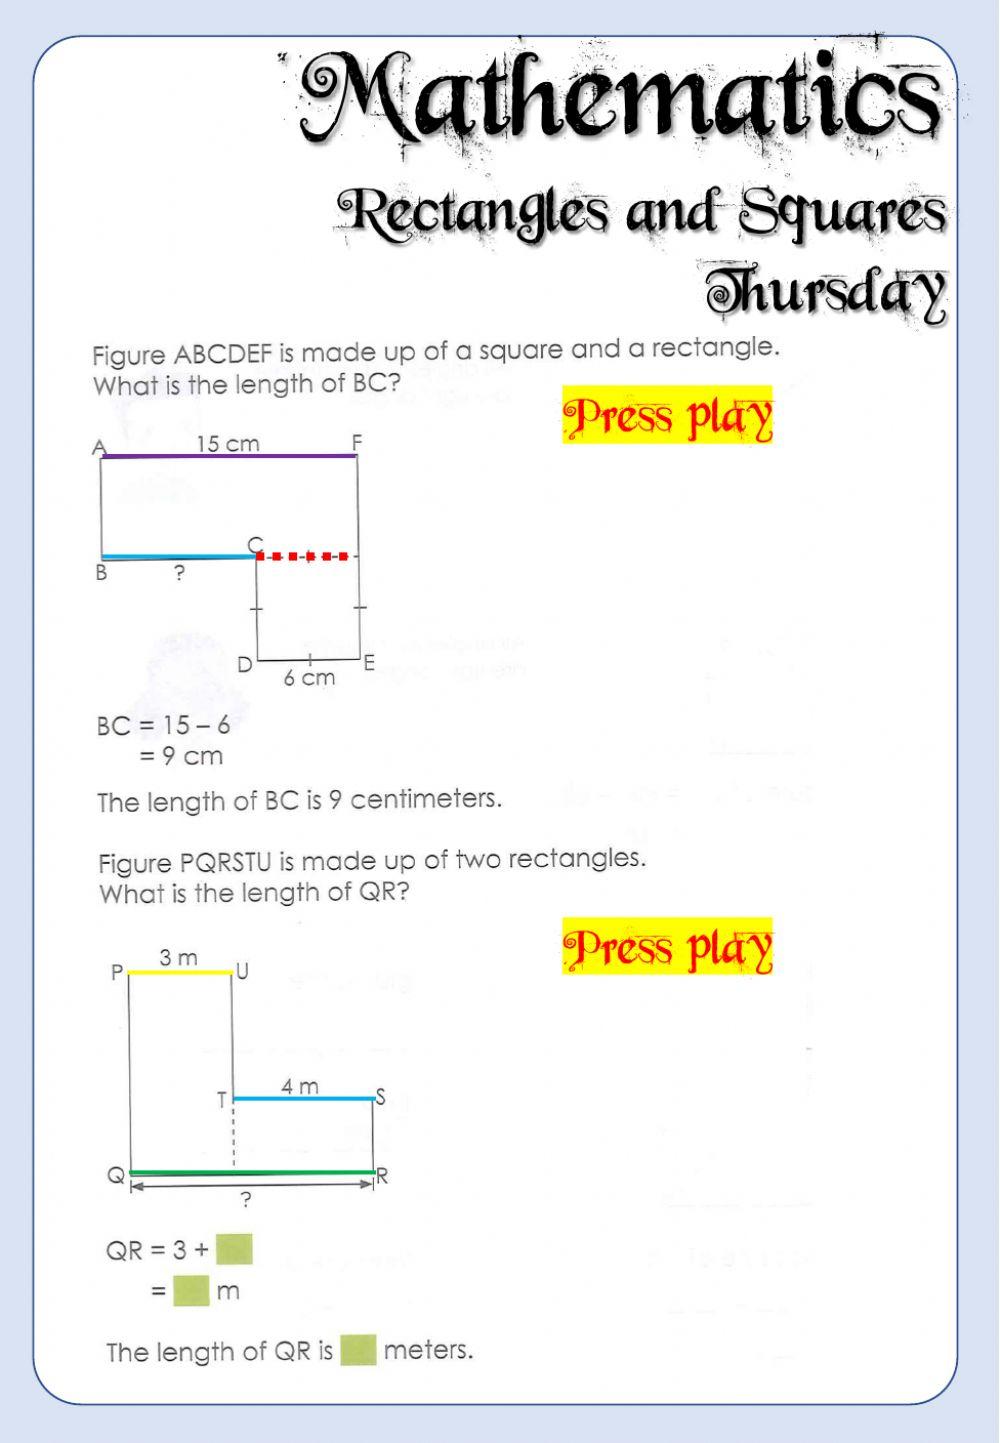 Week 18 - Mathematics - Thursday 6